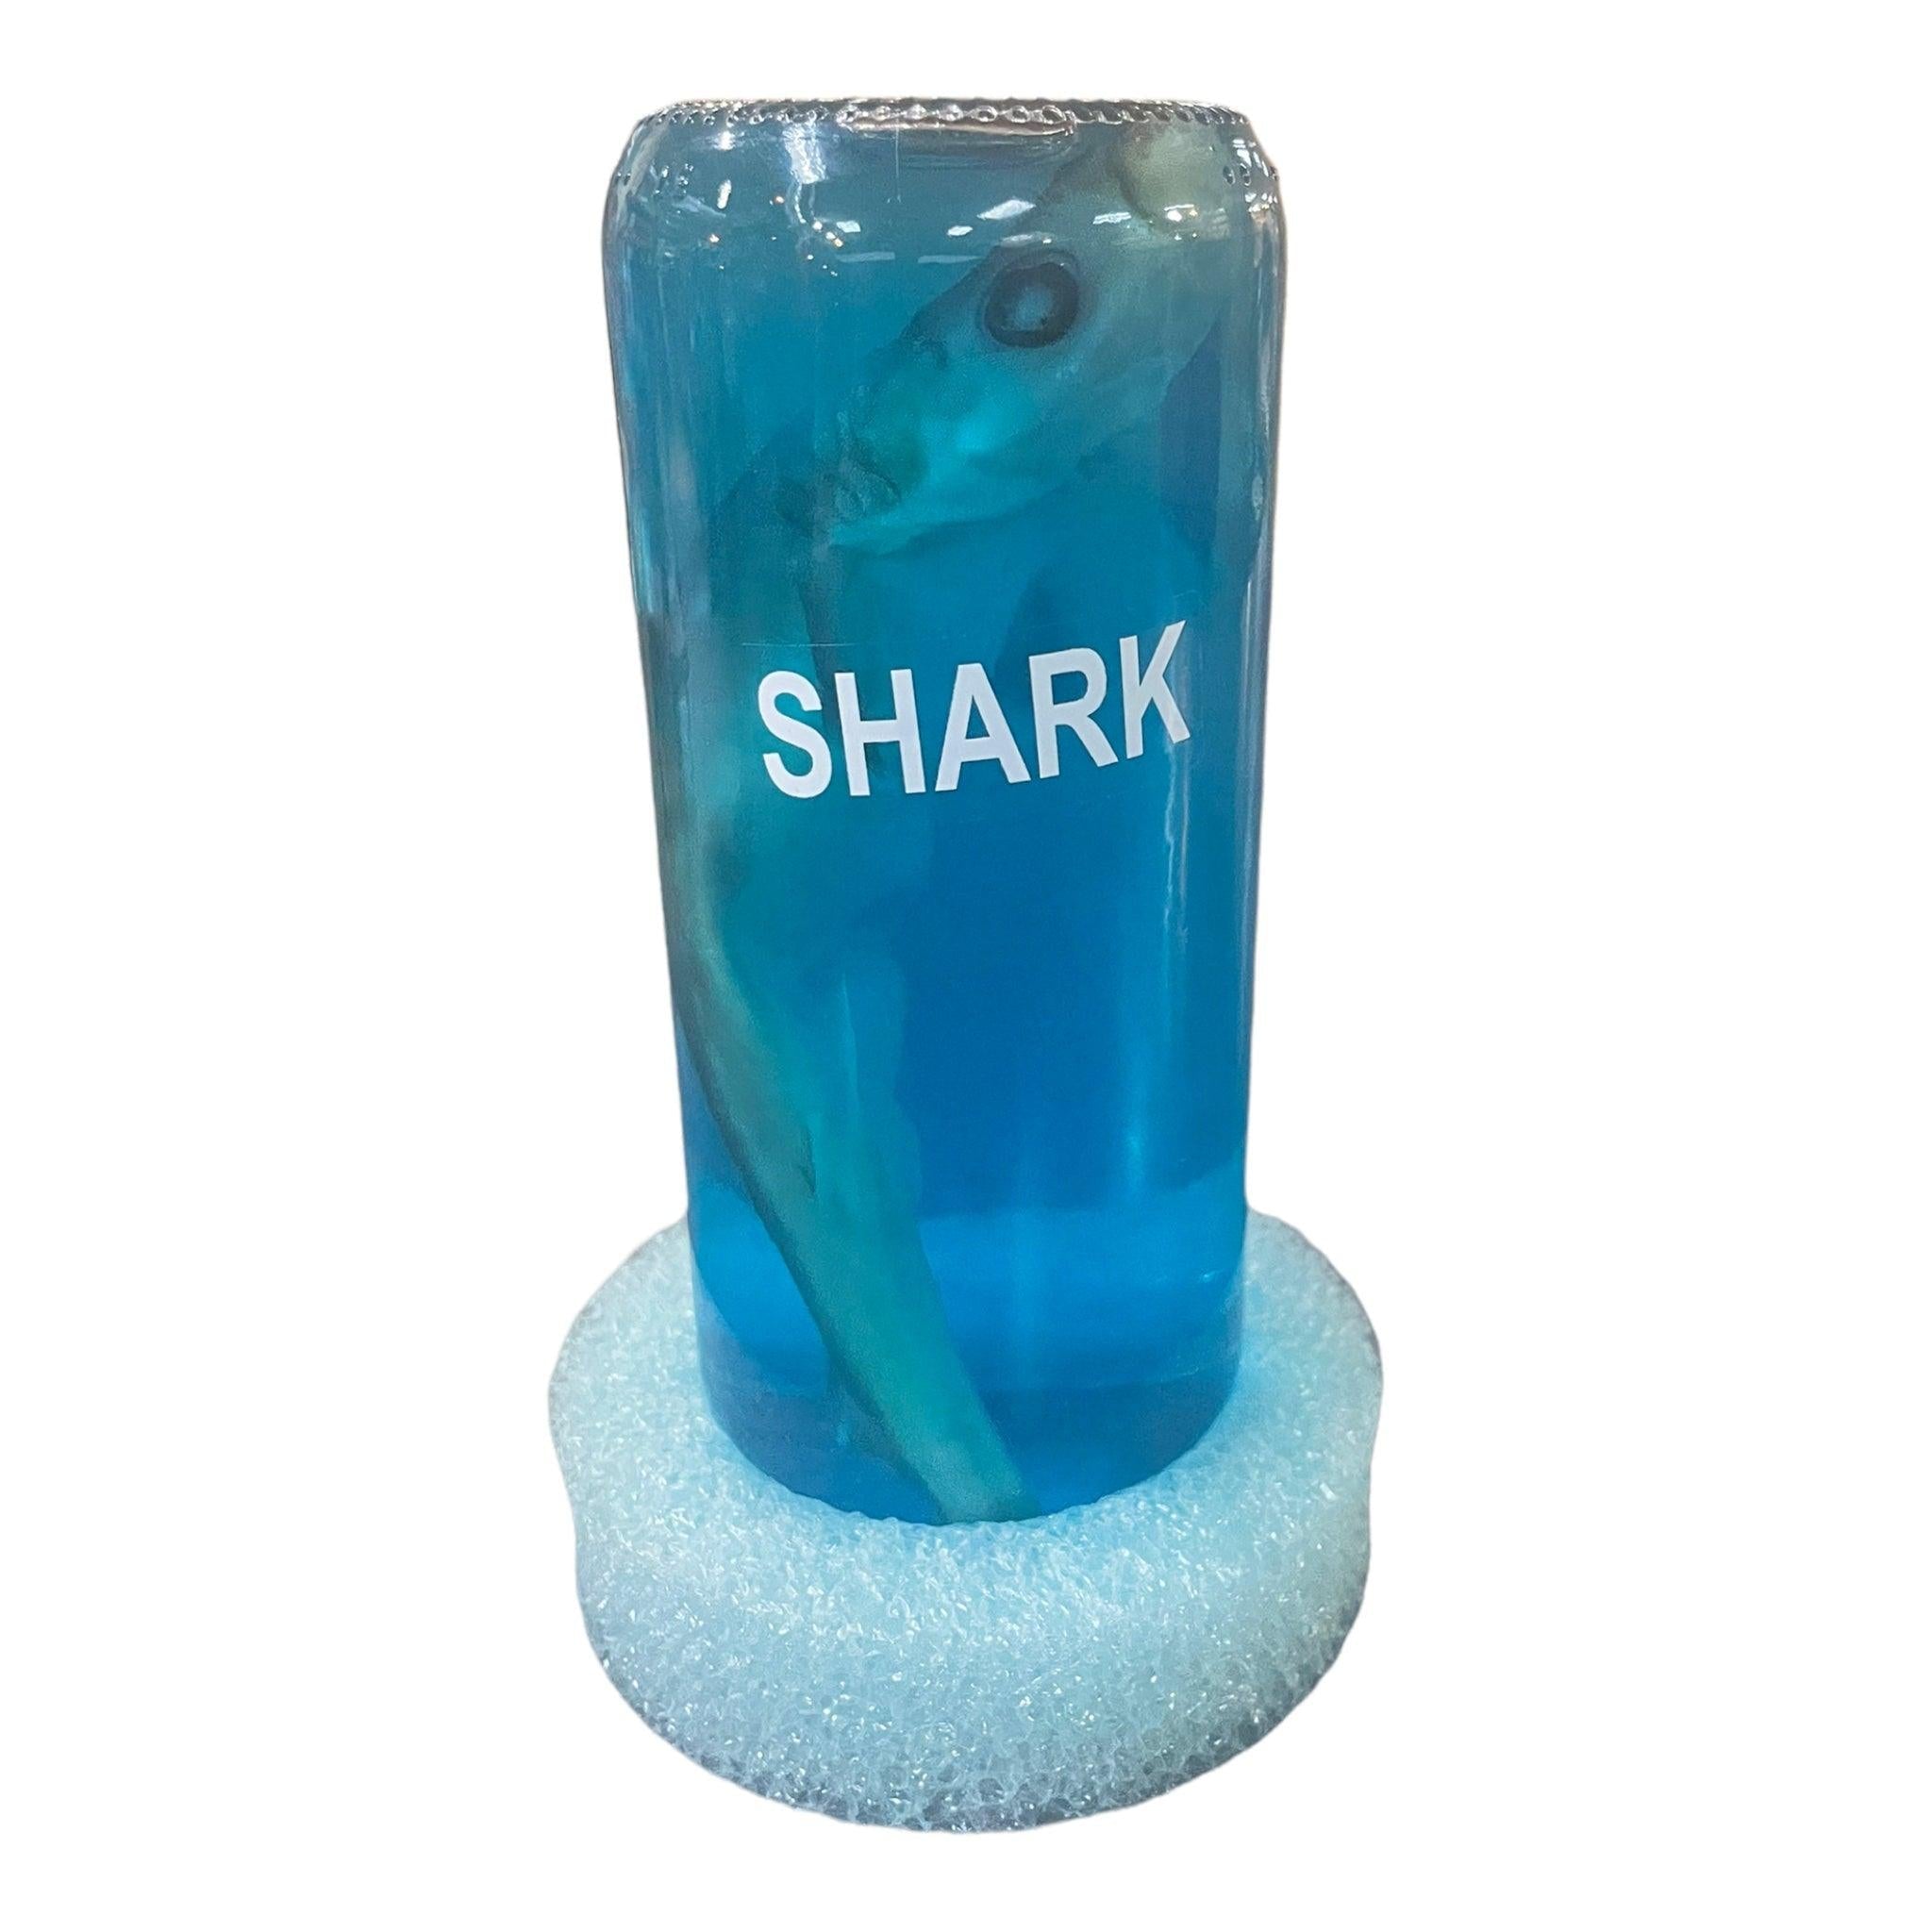 Shark in a Bottle With Foam Base